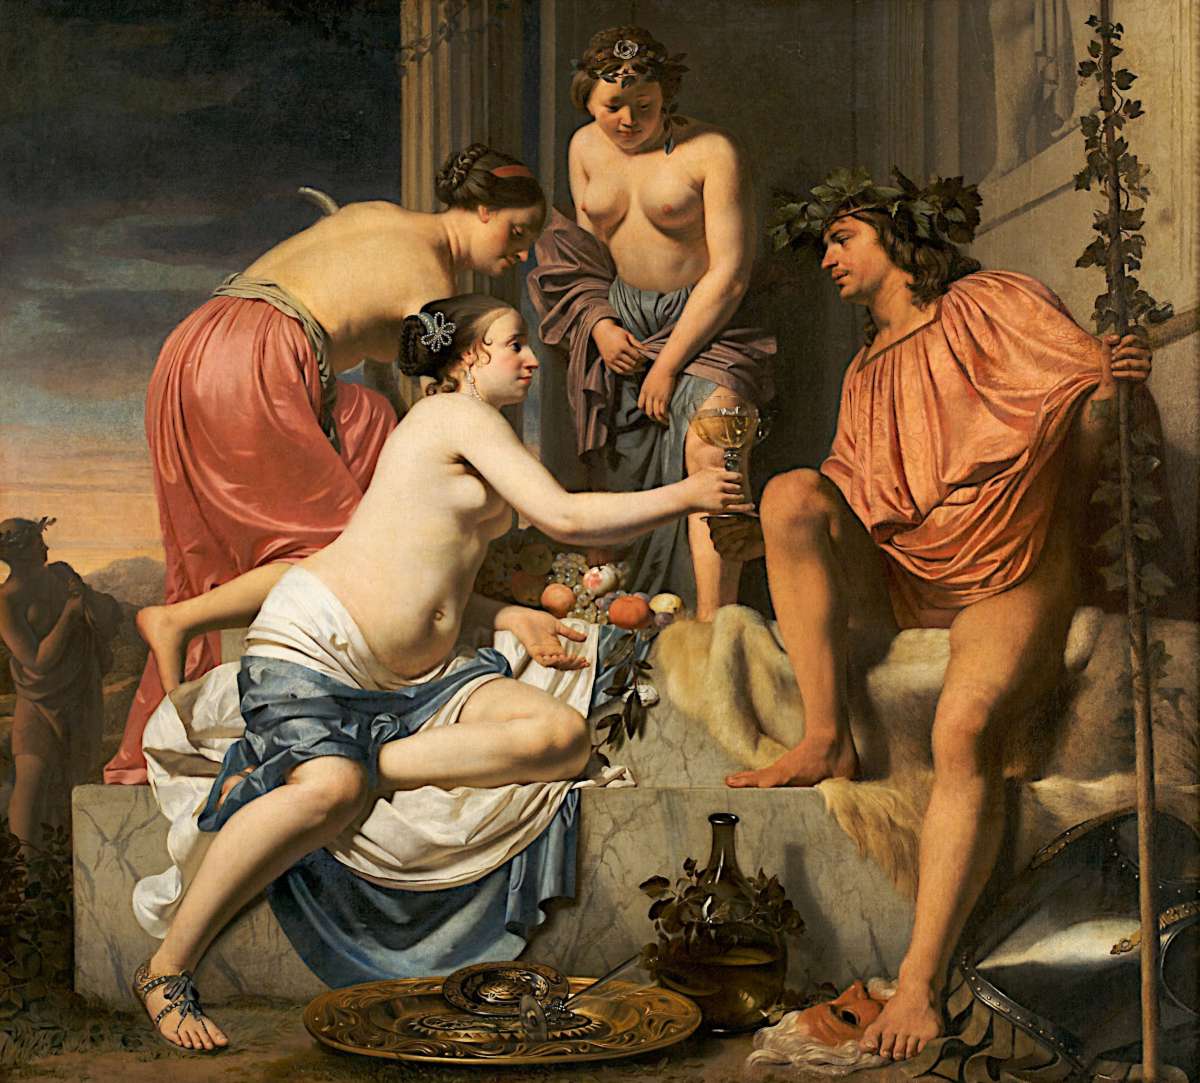 Bacchus sur un trône, Nymphes offrant à Bacchus du vin et des fruits, par Caesar Boetius van Everdingen, vers 1670